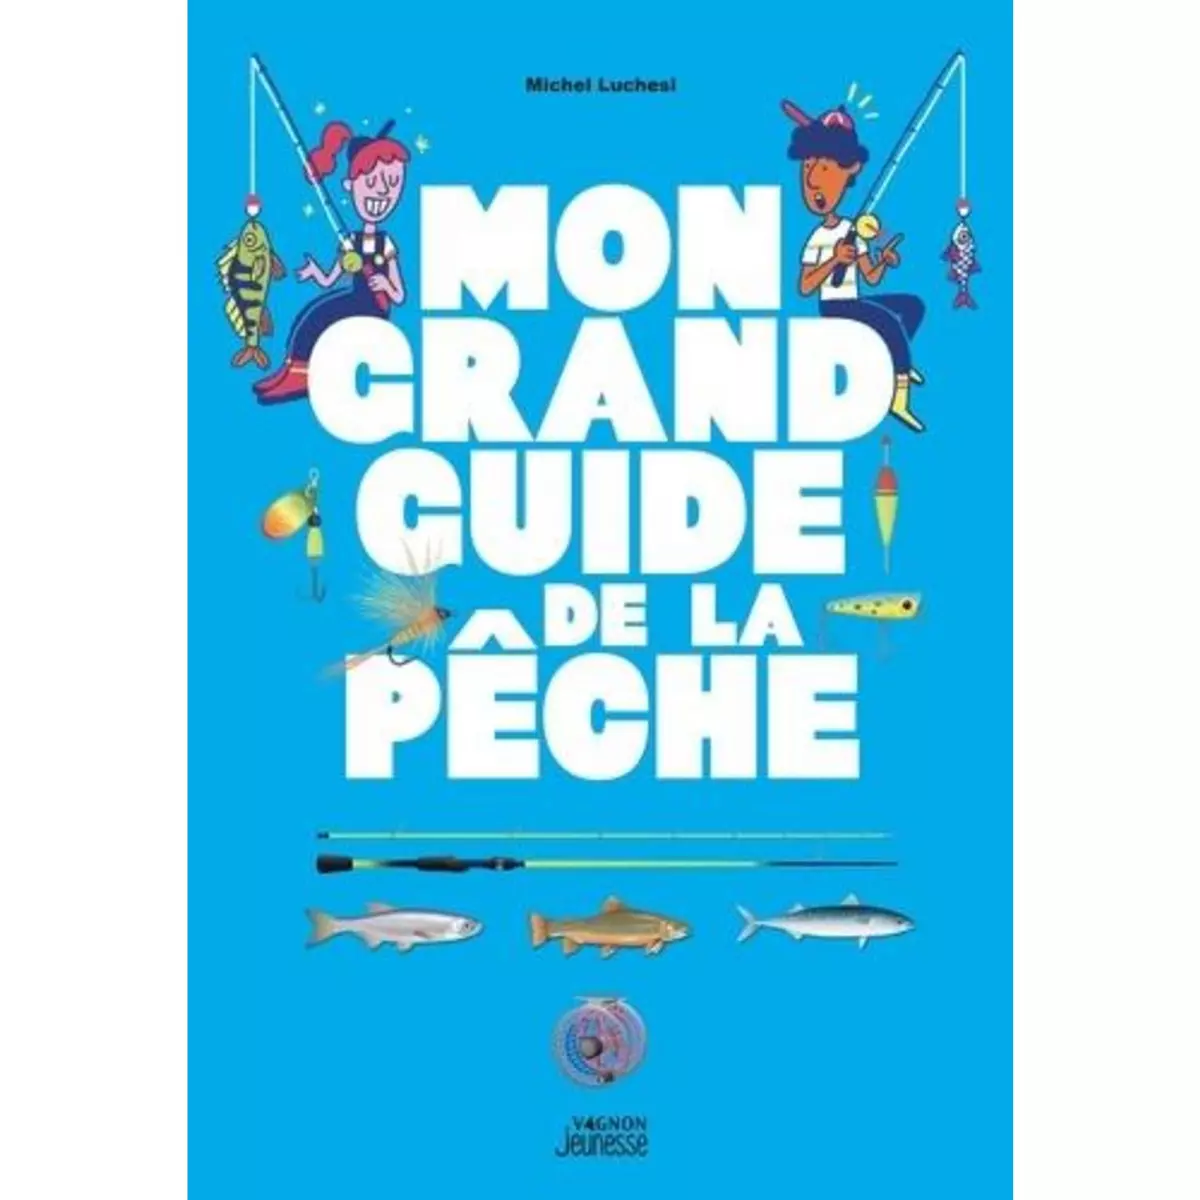  MON GRAND GUIDE DE LA PECHE, Luchesi Michel